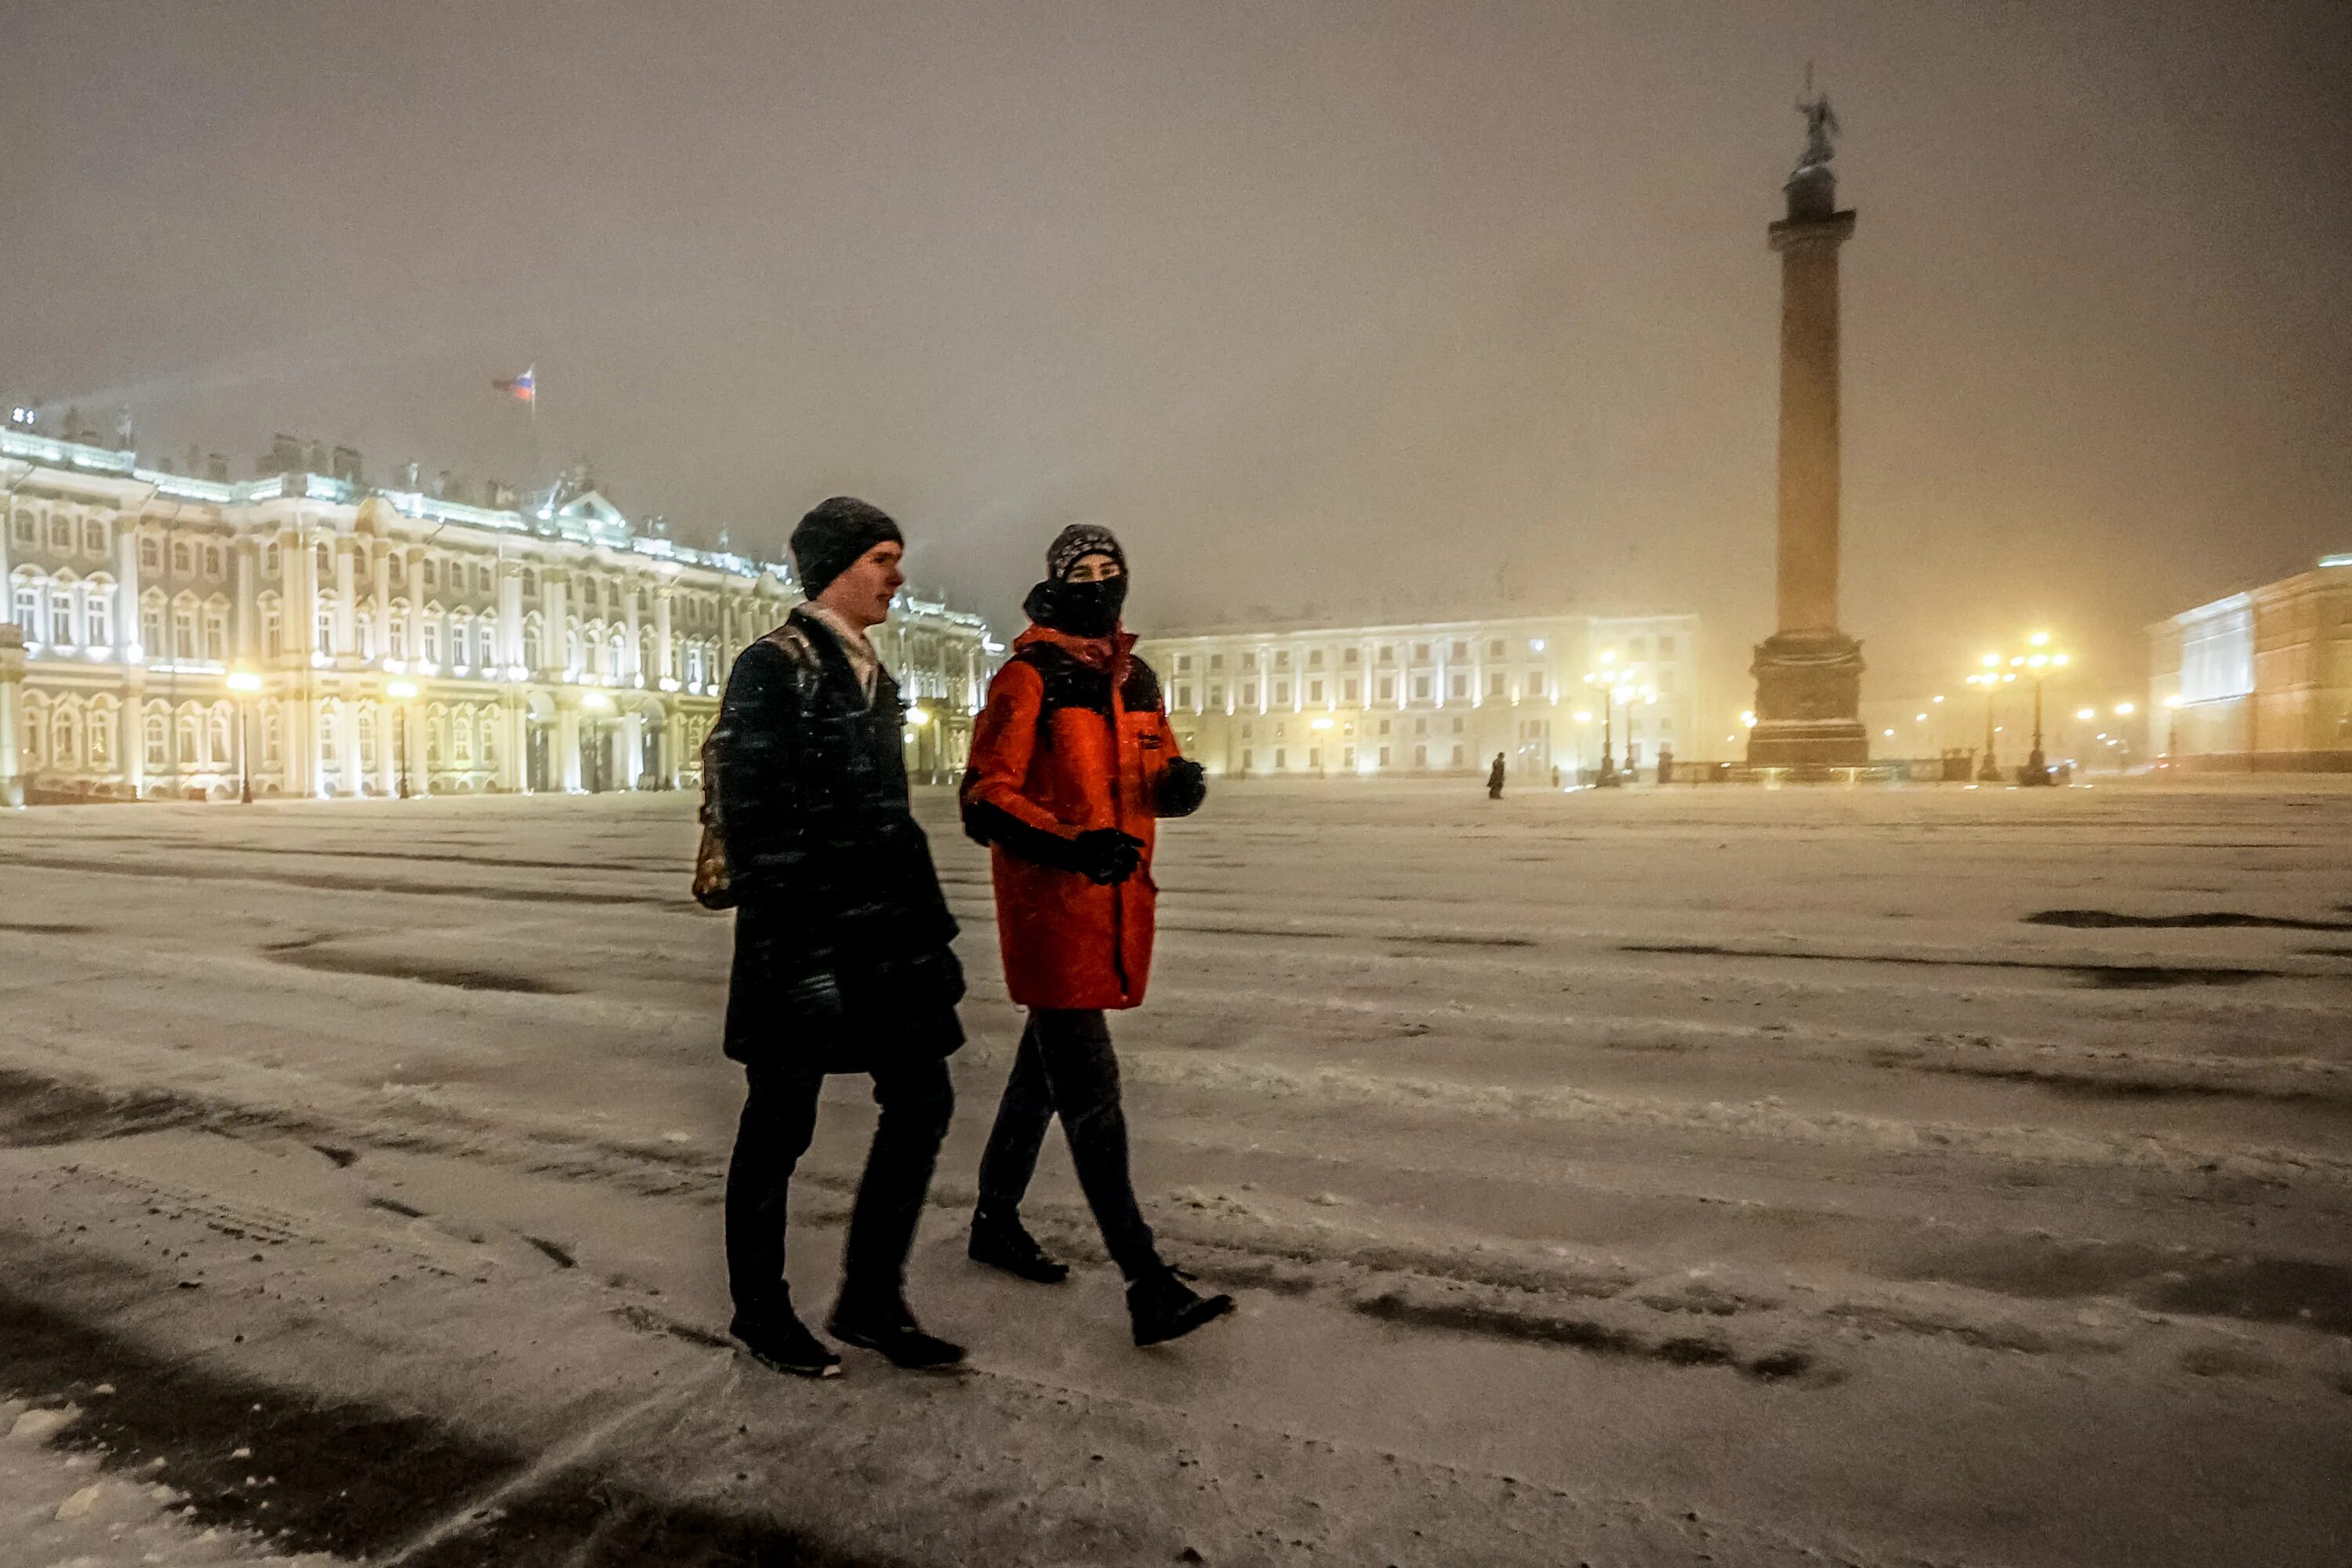 Новости про спб. Жители Санкт-Петербурга. Погода в Питере. Погода в Питере сегодня. В чем сейчас ходят в Питере в такую погоду.